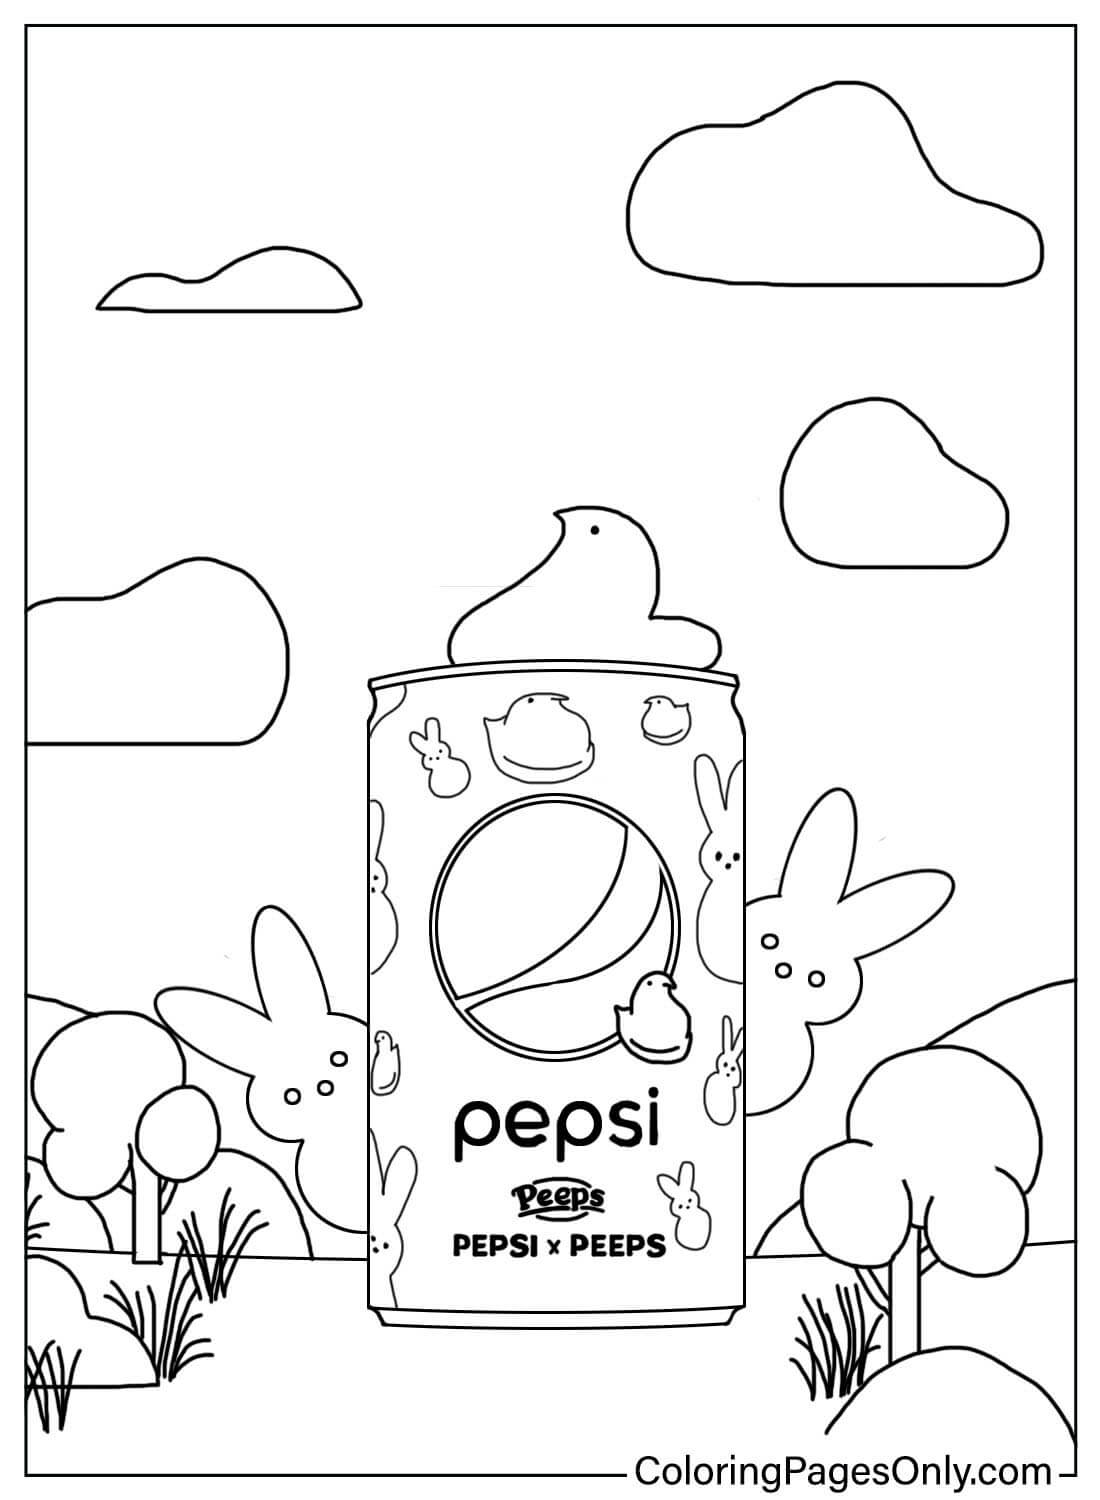 Peeps e Pepsi de Peeps